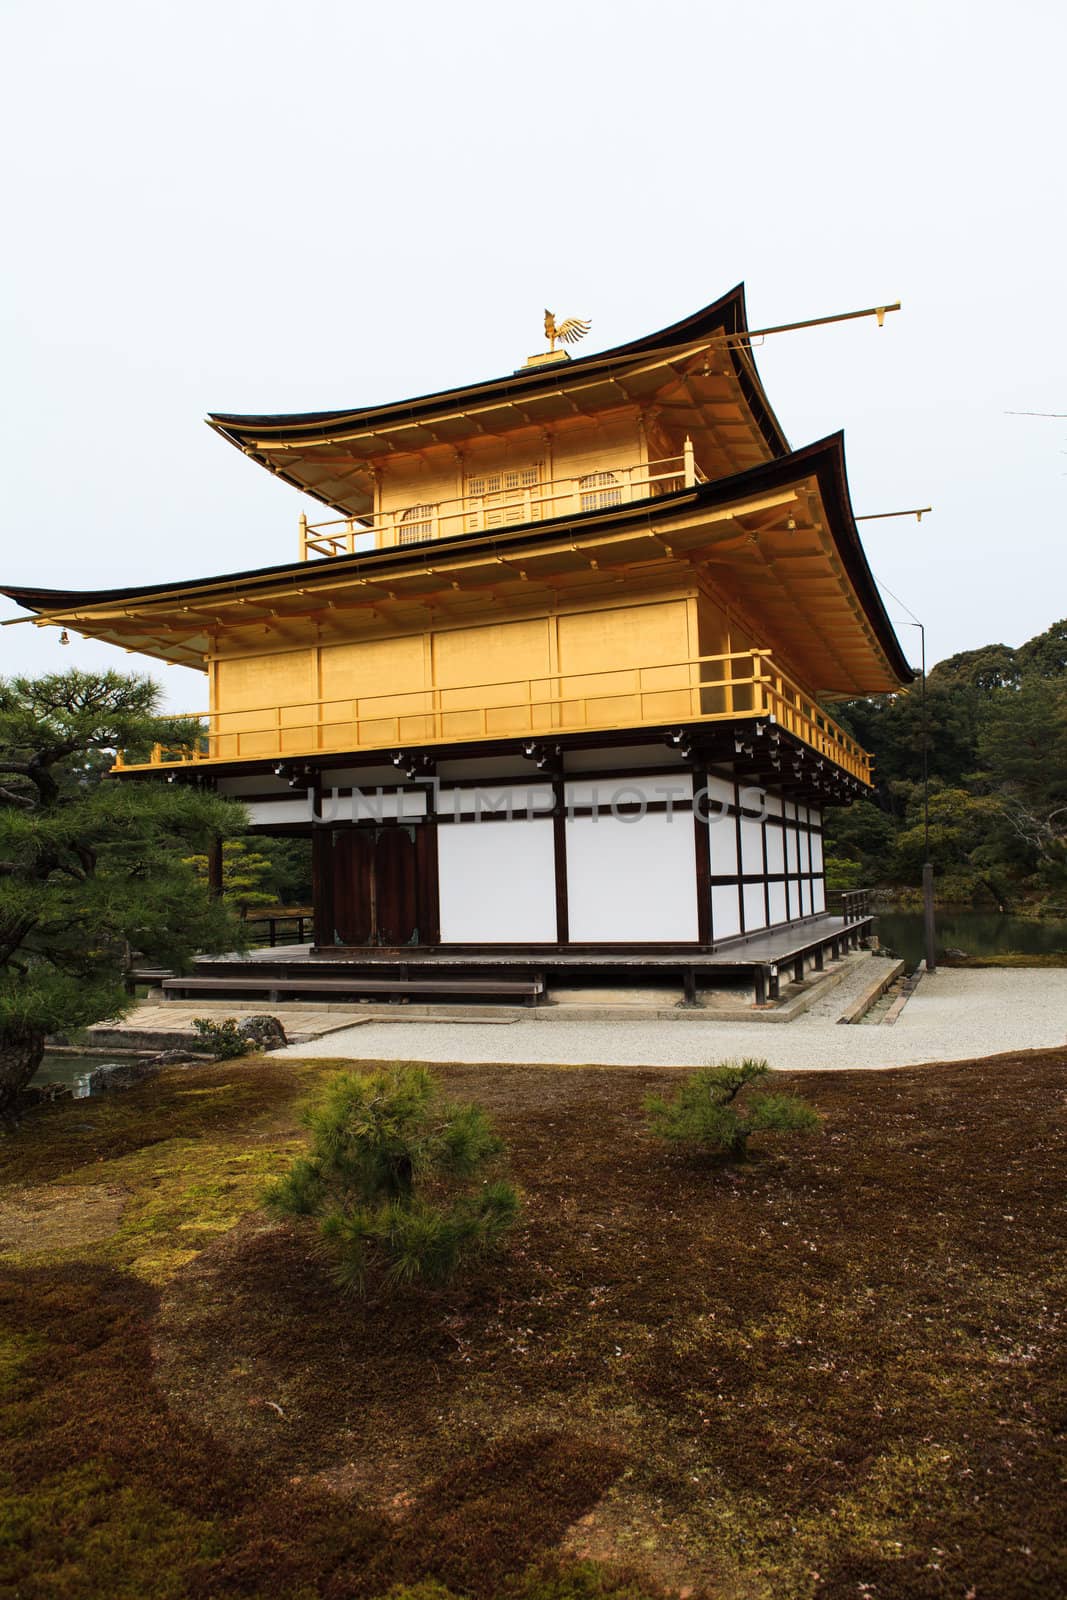 Kinkakuji Temple (The Golden Pavilion) in Kyoto, Japan